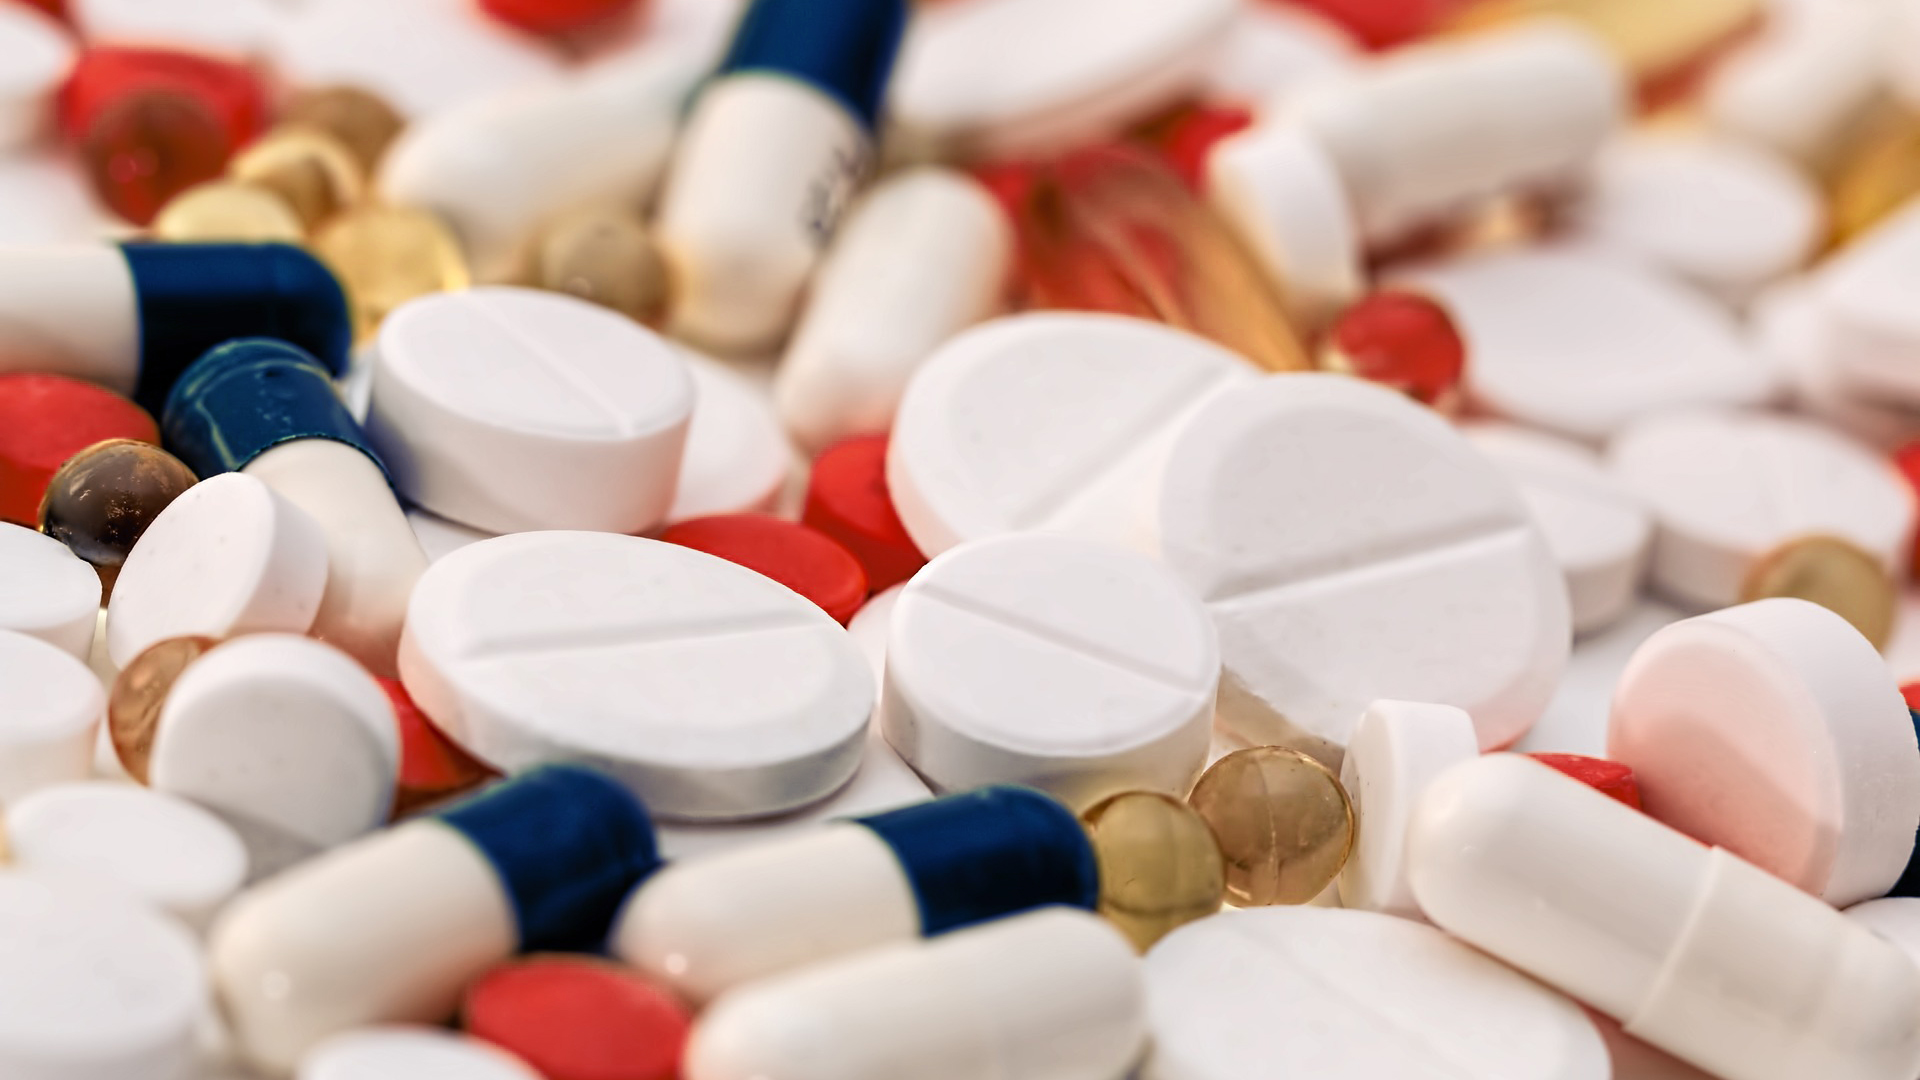 Ilustrační foto: Antibiotika, prášky, pilulky, léky